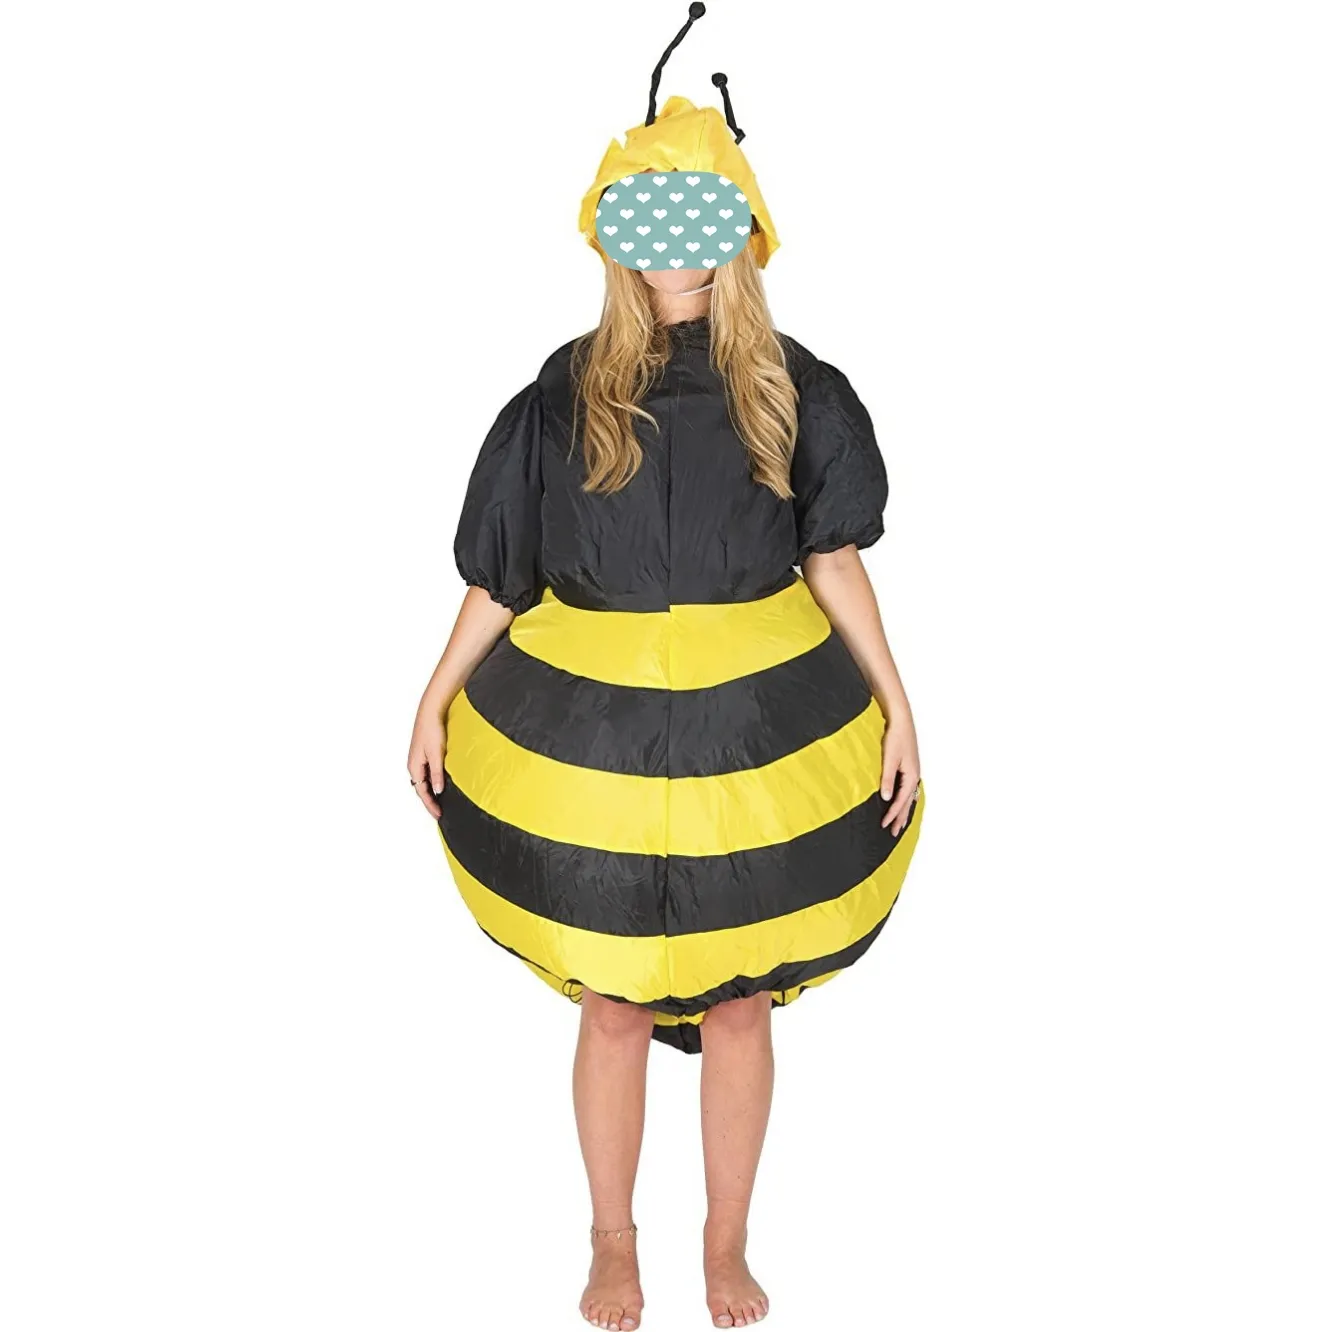 성인 재미 남여 공용 뚱뚱한 할로윈 의상 에어 블로우 업 슈트 풍선 꿀벌 마스코트 의상 프로모션